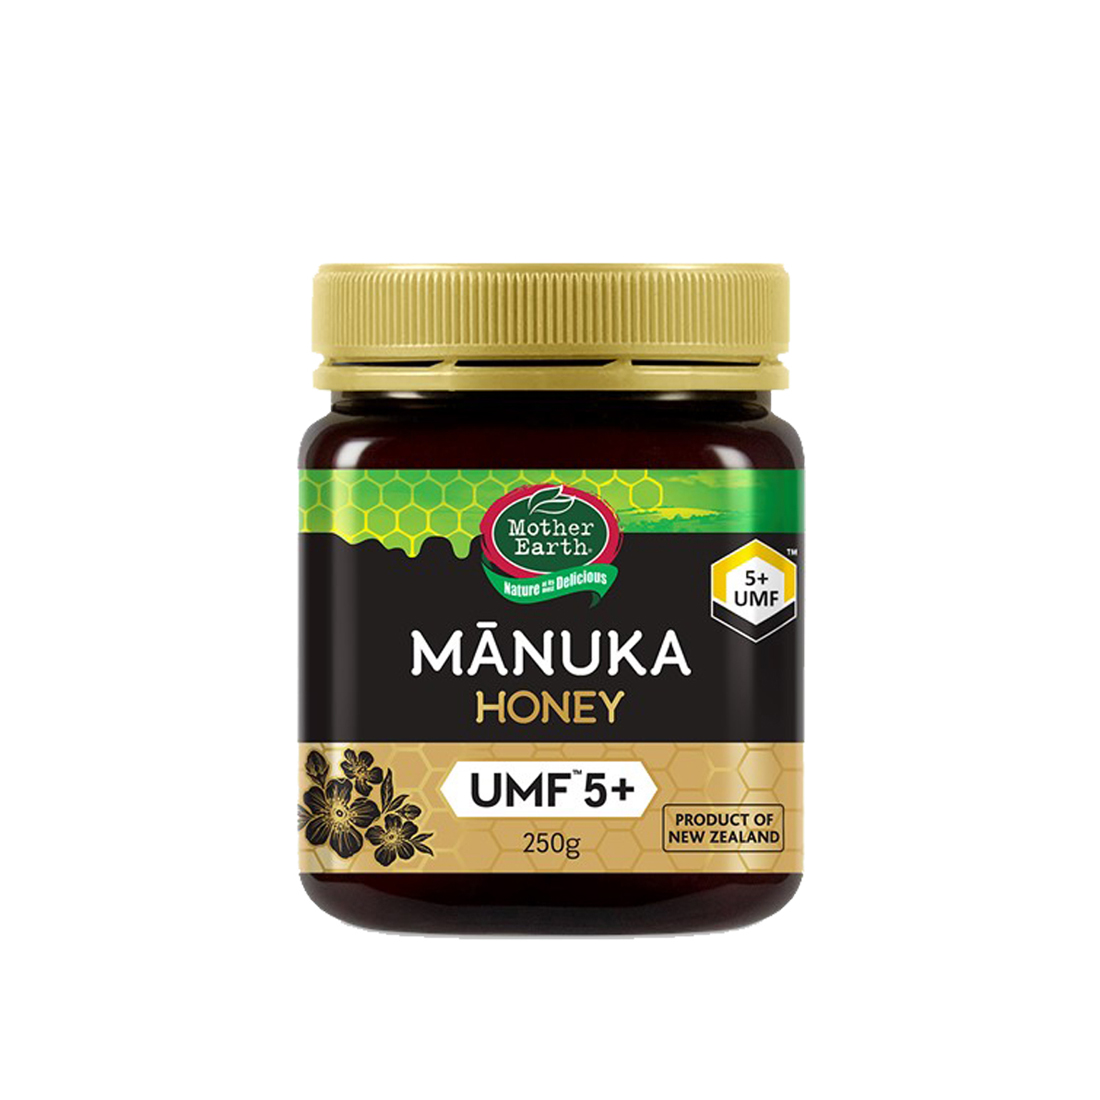 Mother Earth: Manuka Honey UMF 5+